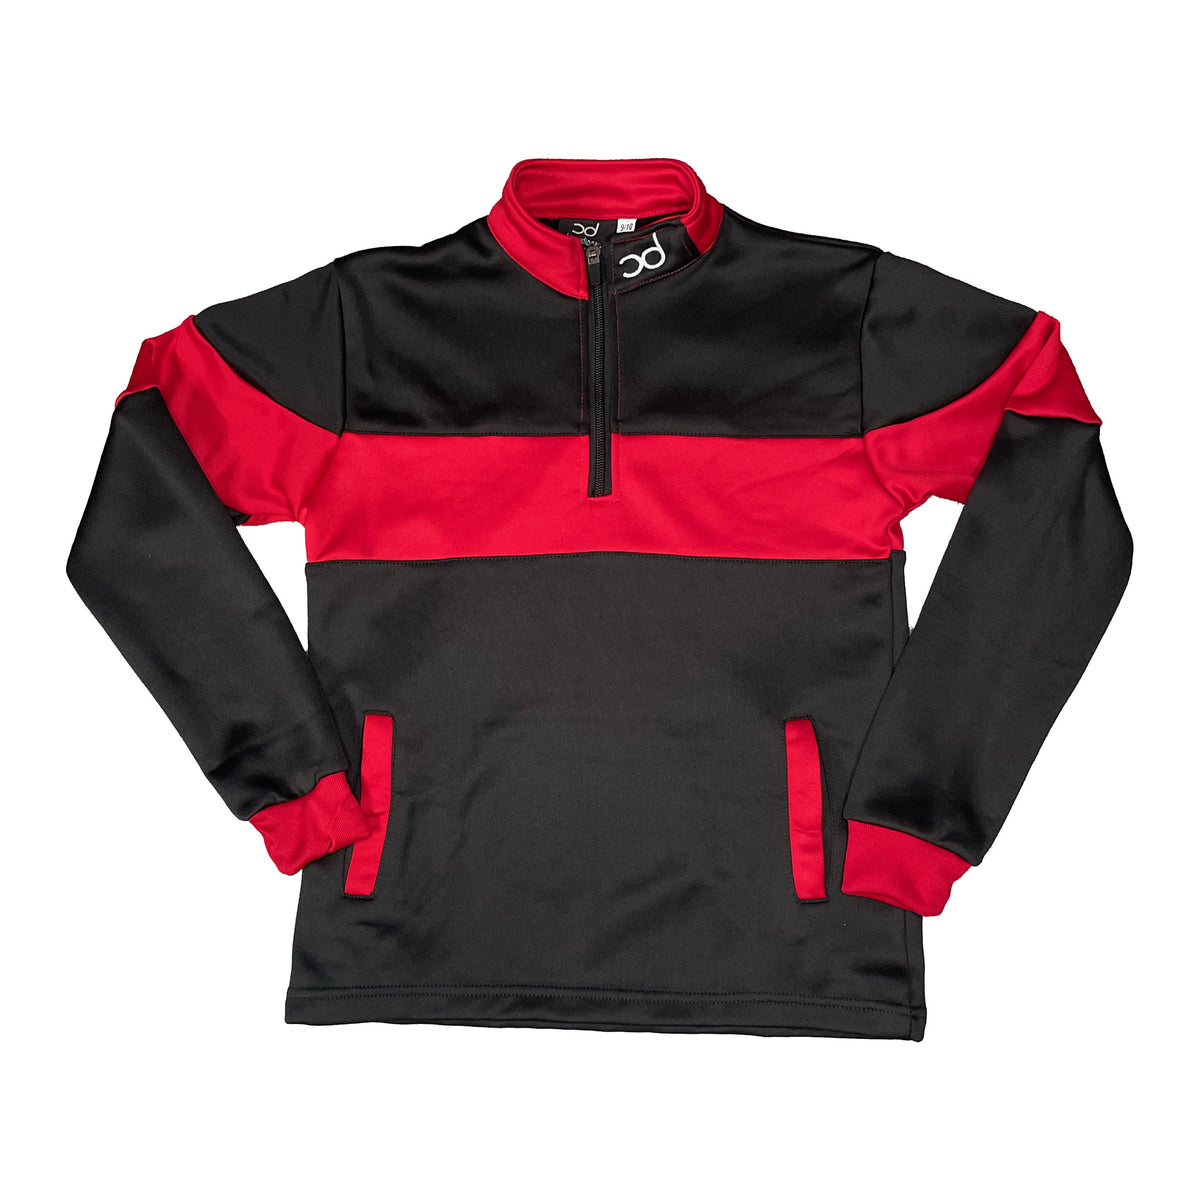 REXY Junior 1/4 Zip Jacket - Black/Red